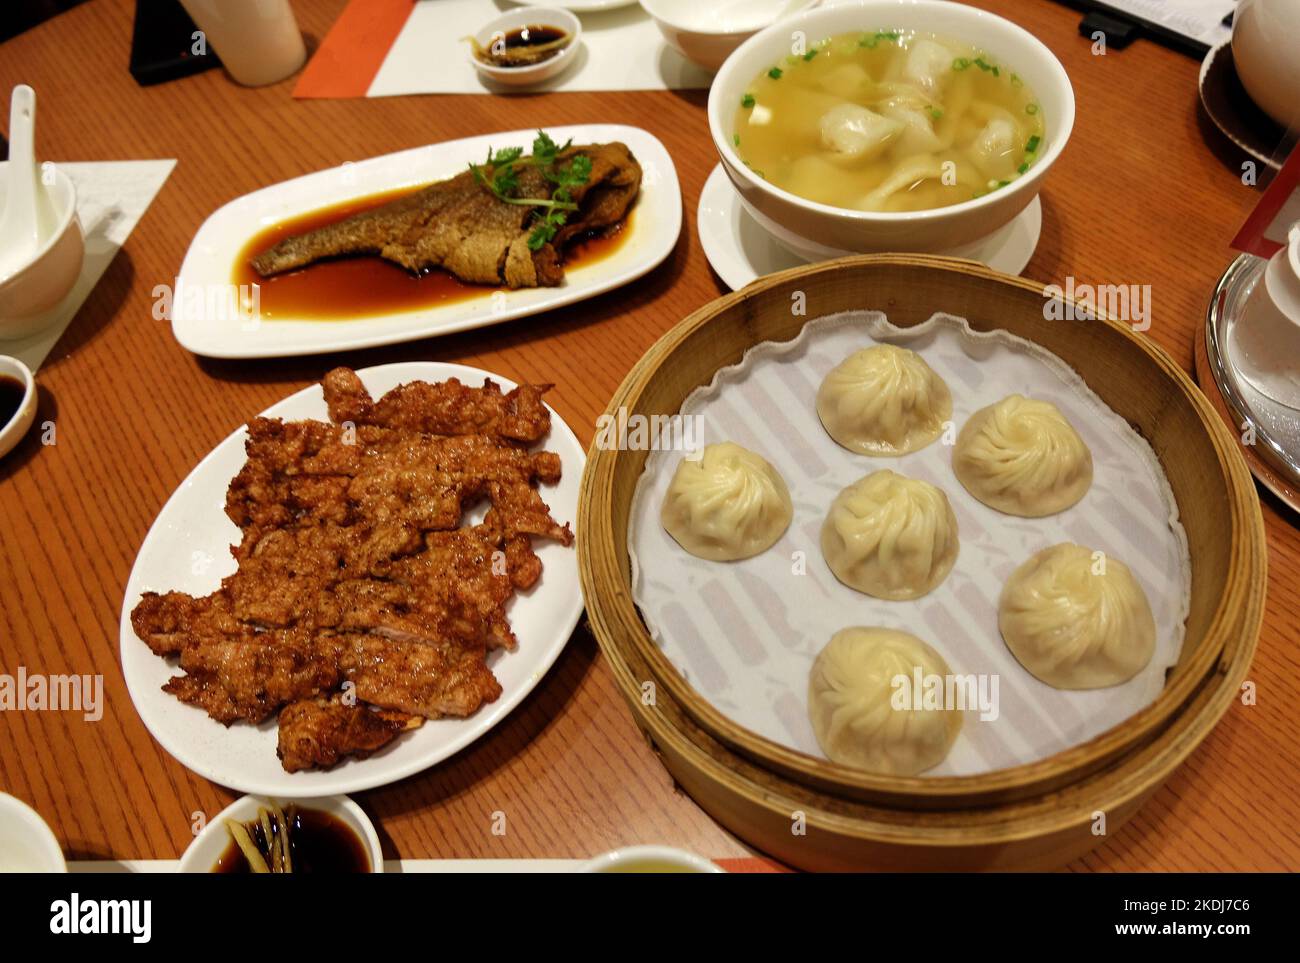 Chinois Dim Sum - porc et poisson frits avec soupe de nouilles wonton et Xiao long Bao (boulettes de porc cuites à la vapeur de Shanghai remplies de bouillon) Banque D'Images